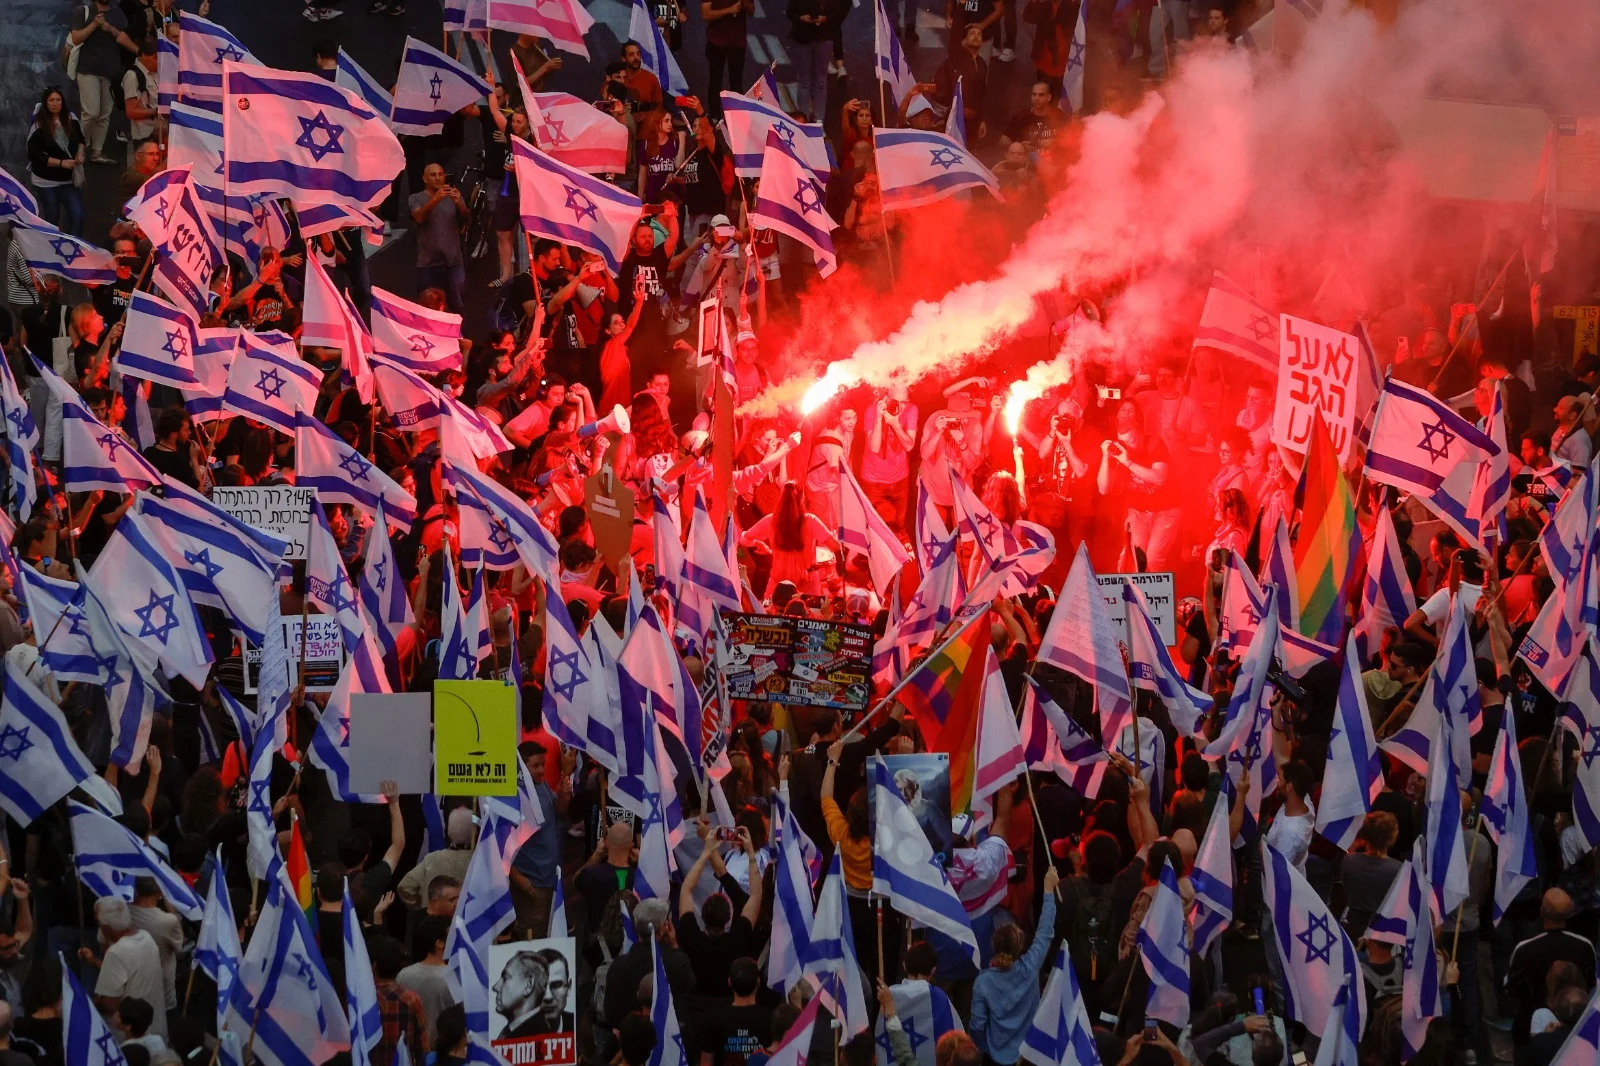 אלפים מפגינים בתל אביב